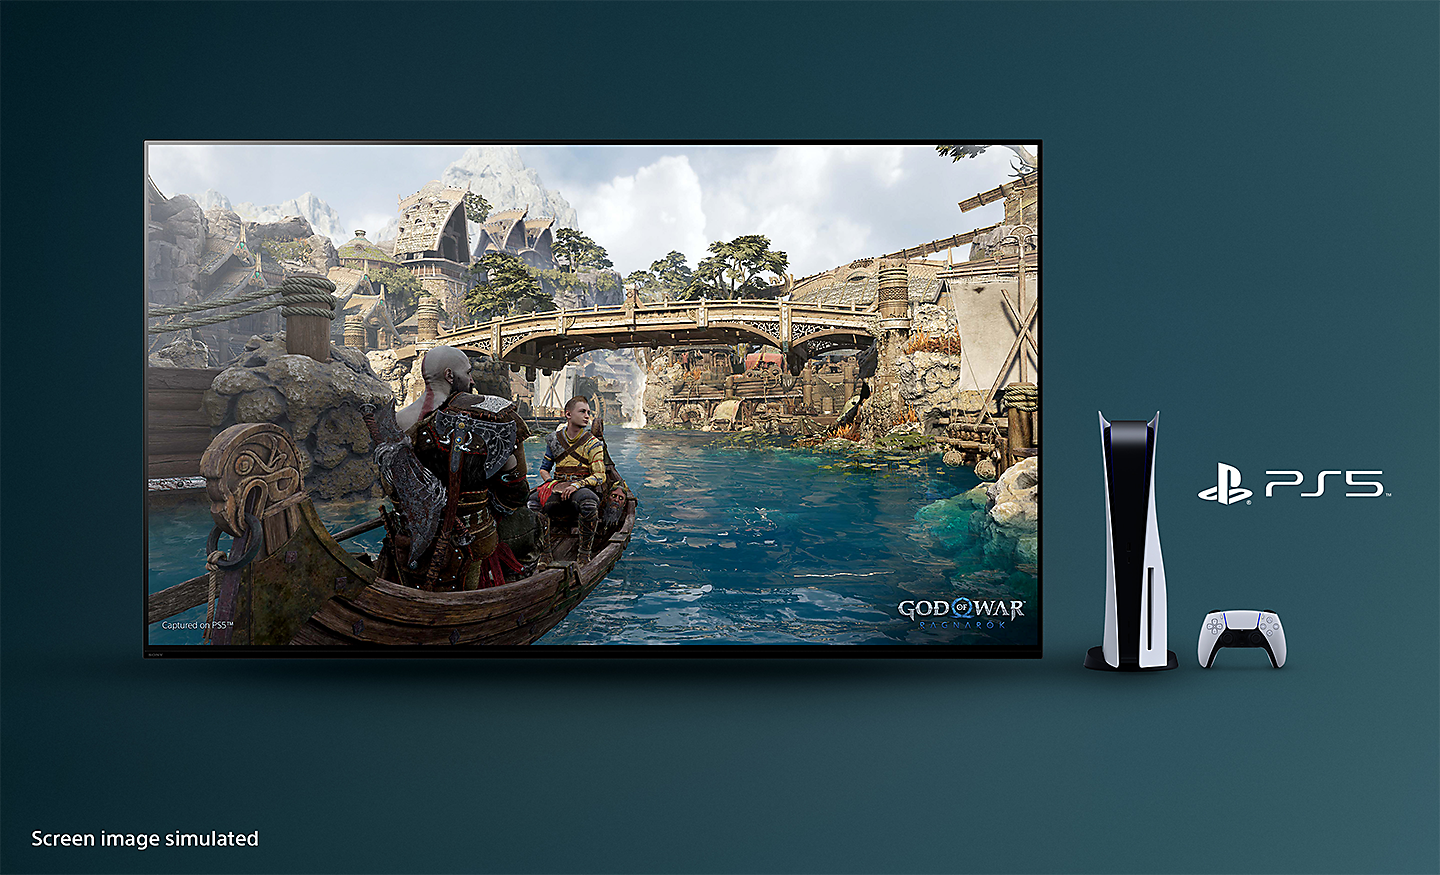 BRAVIA-tv met een screenshot van God of War: Ragnarök met een boot die over een rivier vaart en een brug op de achtergrond; rechts van de tv staat een PS5™-console met controller en het PS5™-logo